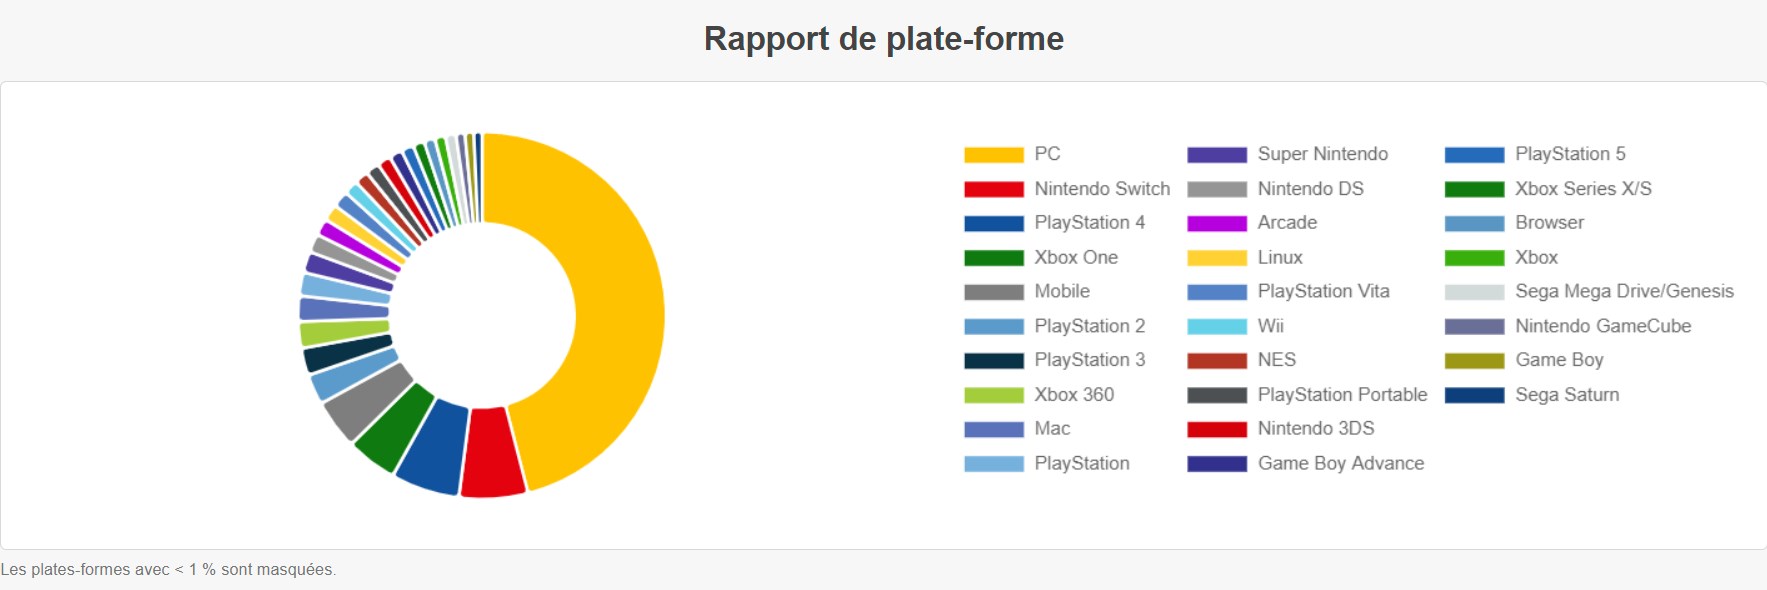 Le PC reste la plateforme la plus populaire pour jouer !